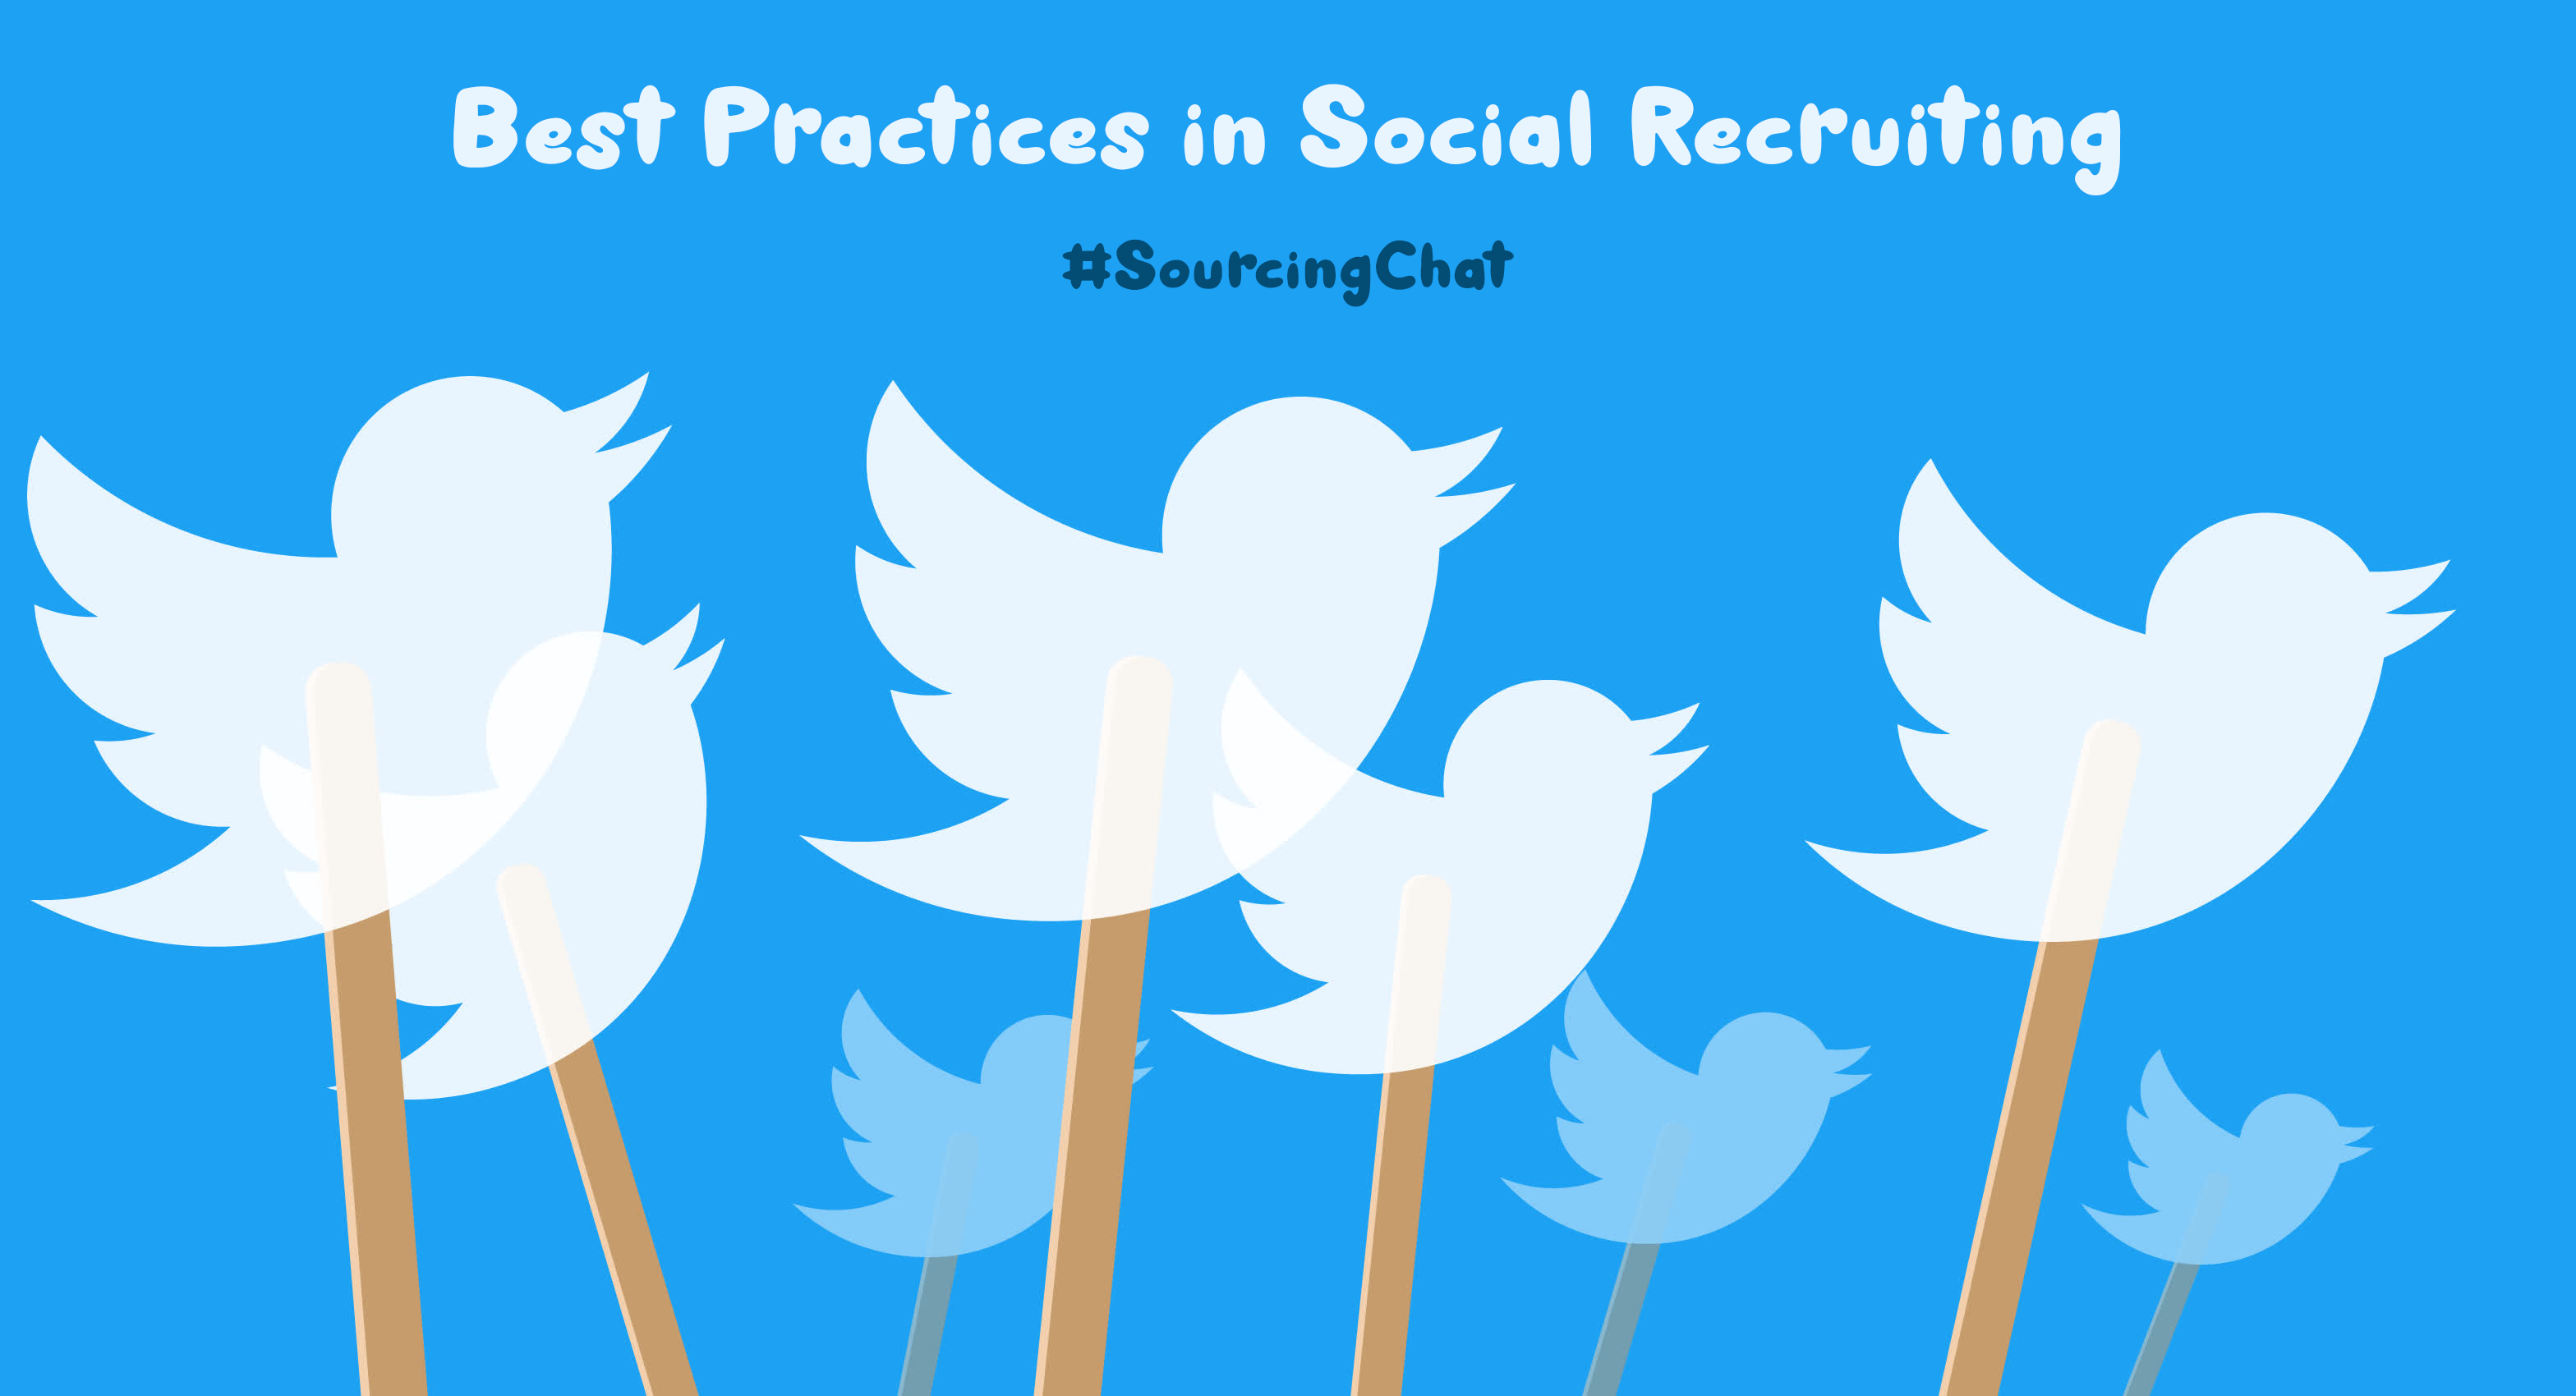 Top Tweets of the Sourcing Chat ÃƒÂ¢Ã¢â€šÂ¬Ã¢â‚¬Å“ Best Practices in Social Recruiting